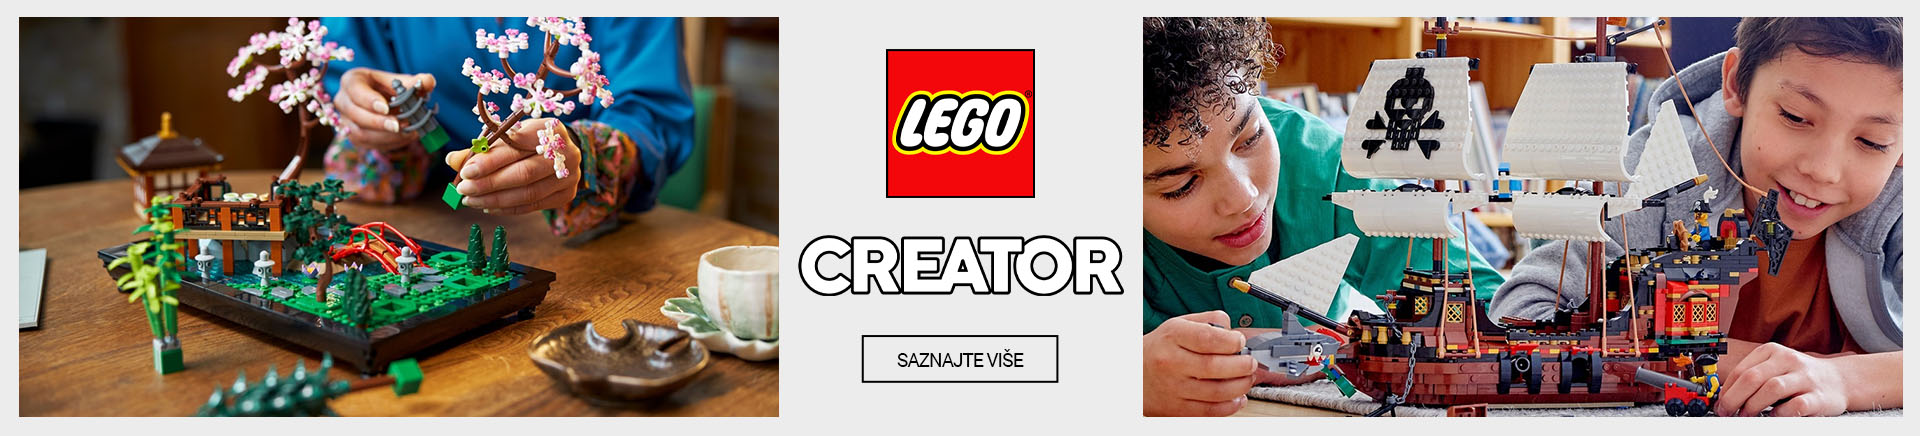 ME Lego creator DESKTOP 1200 X 436.jpg